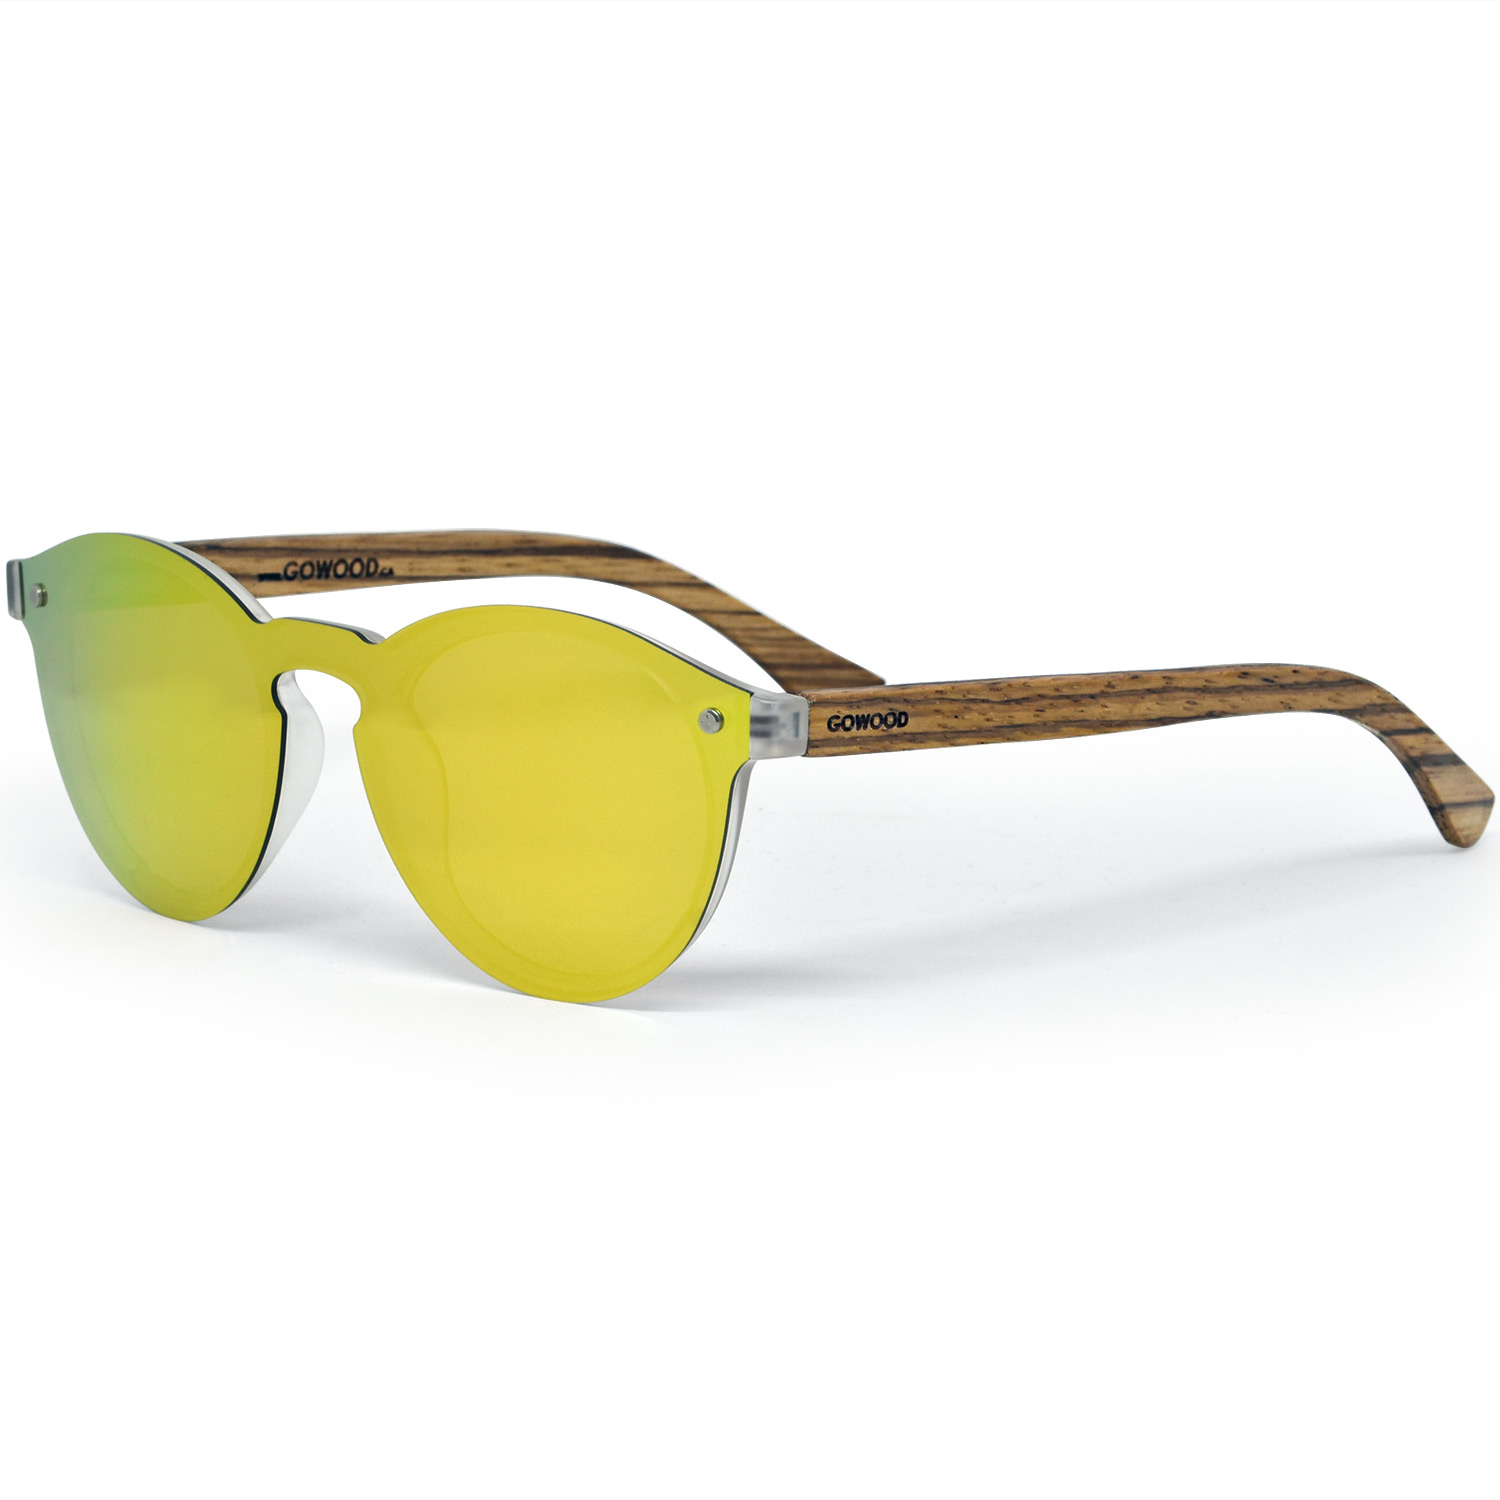 Round zebra wood sunglasses gold polarized polarized lenses